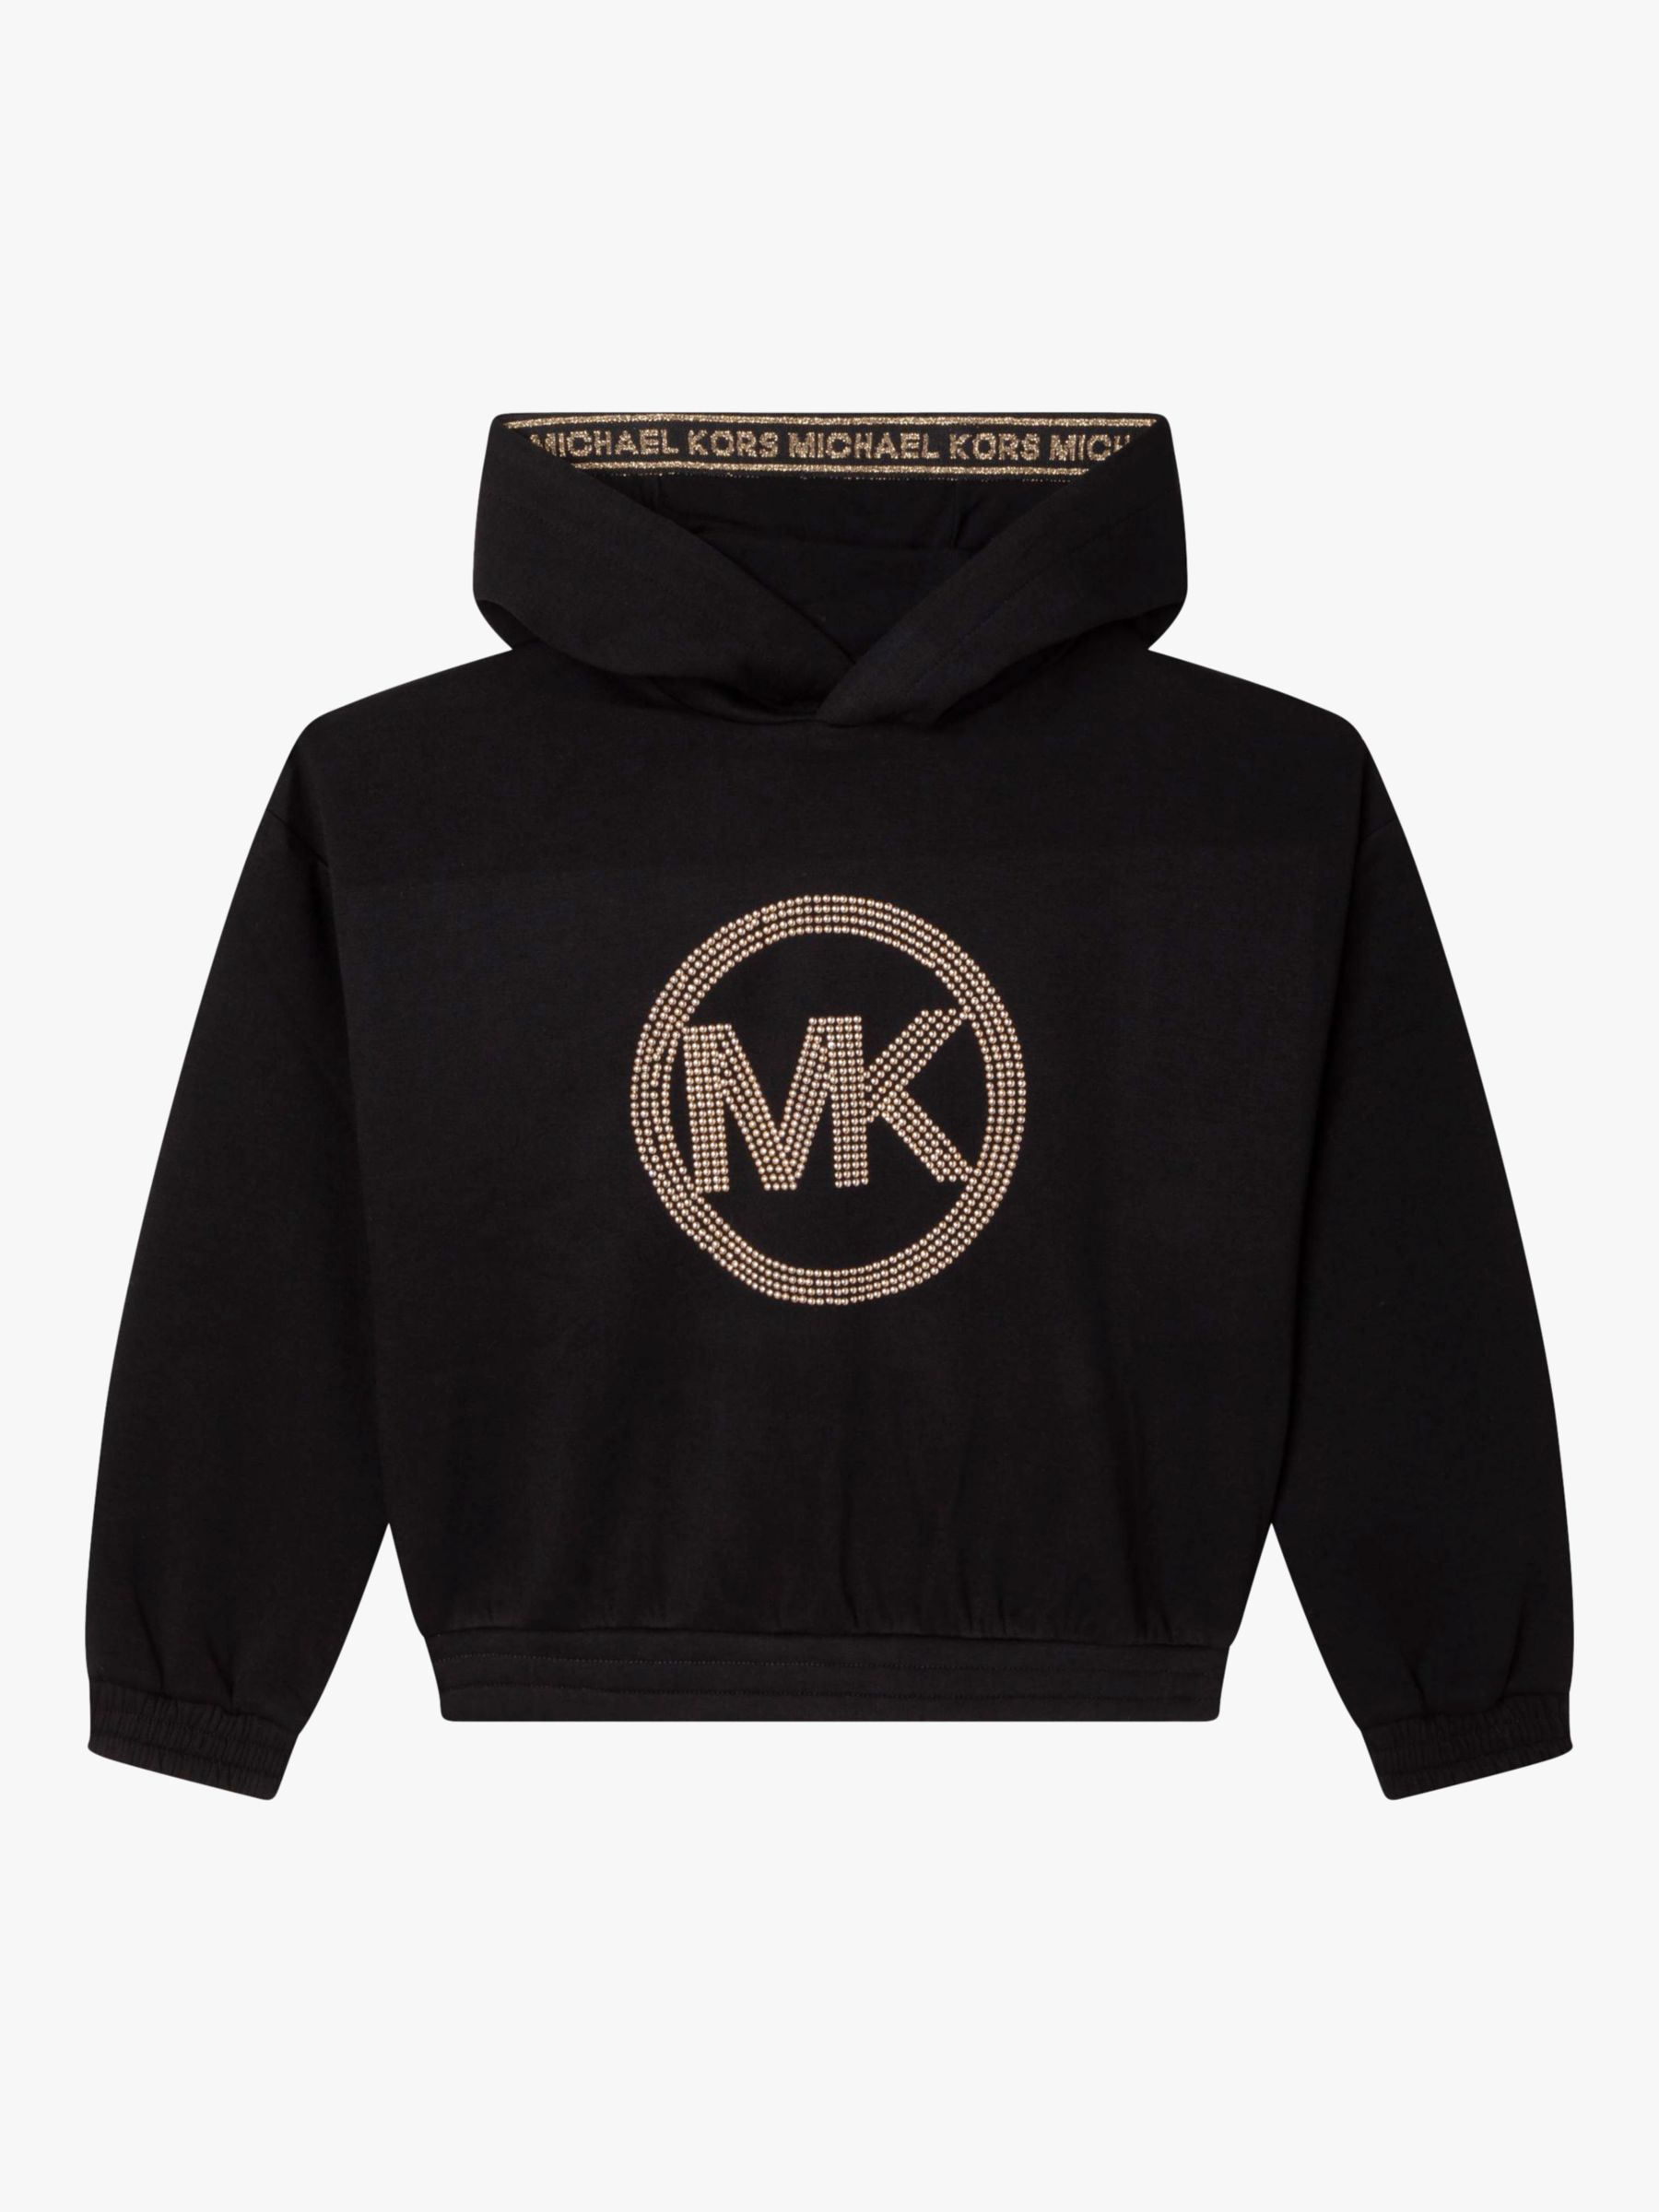 Michael Kors Kids' Stud Logo Hoodie, Black, 5 years